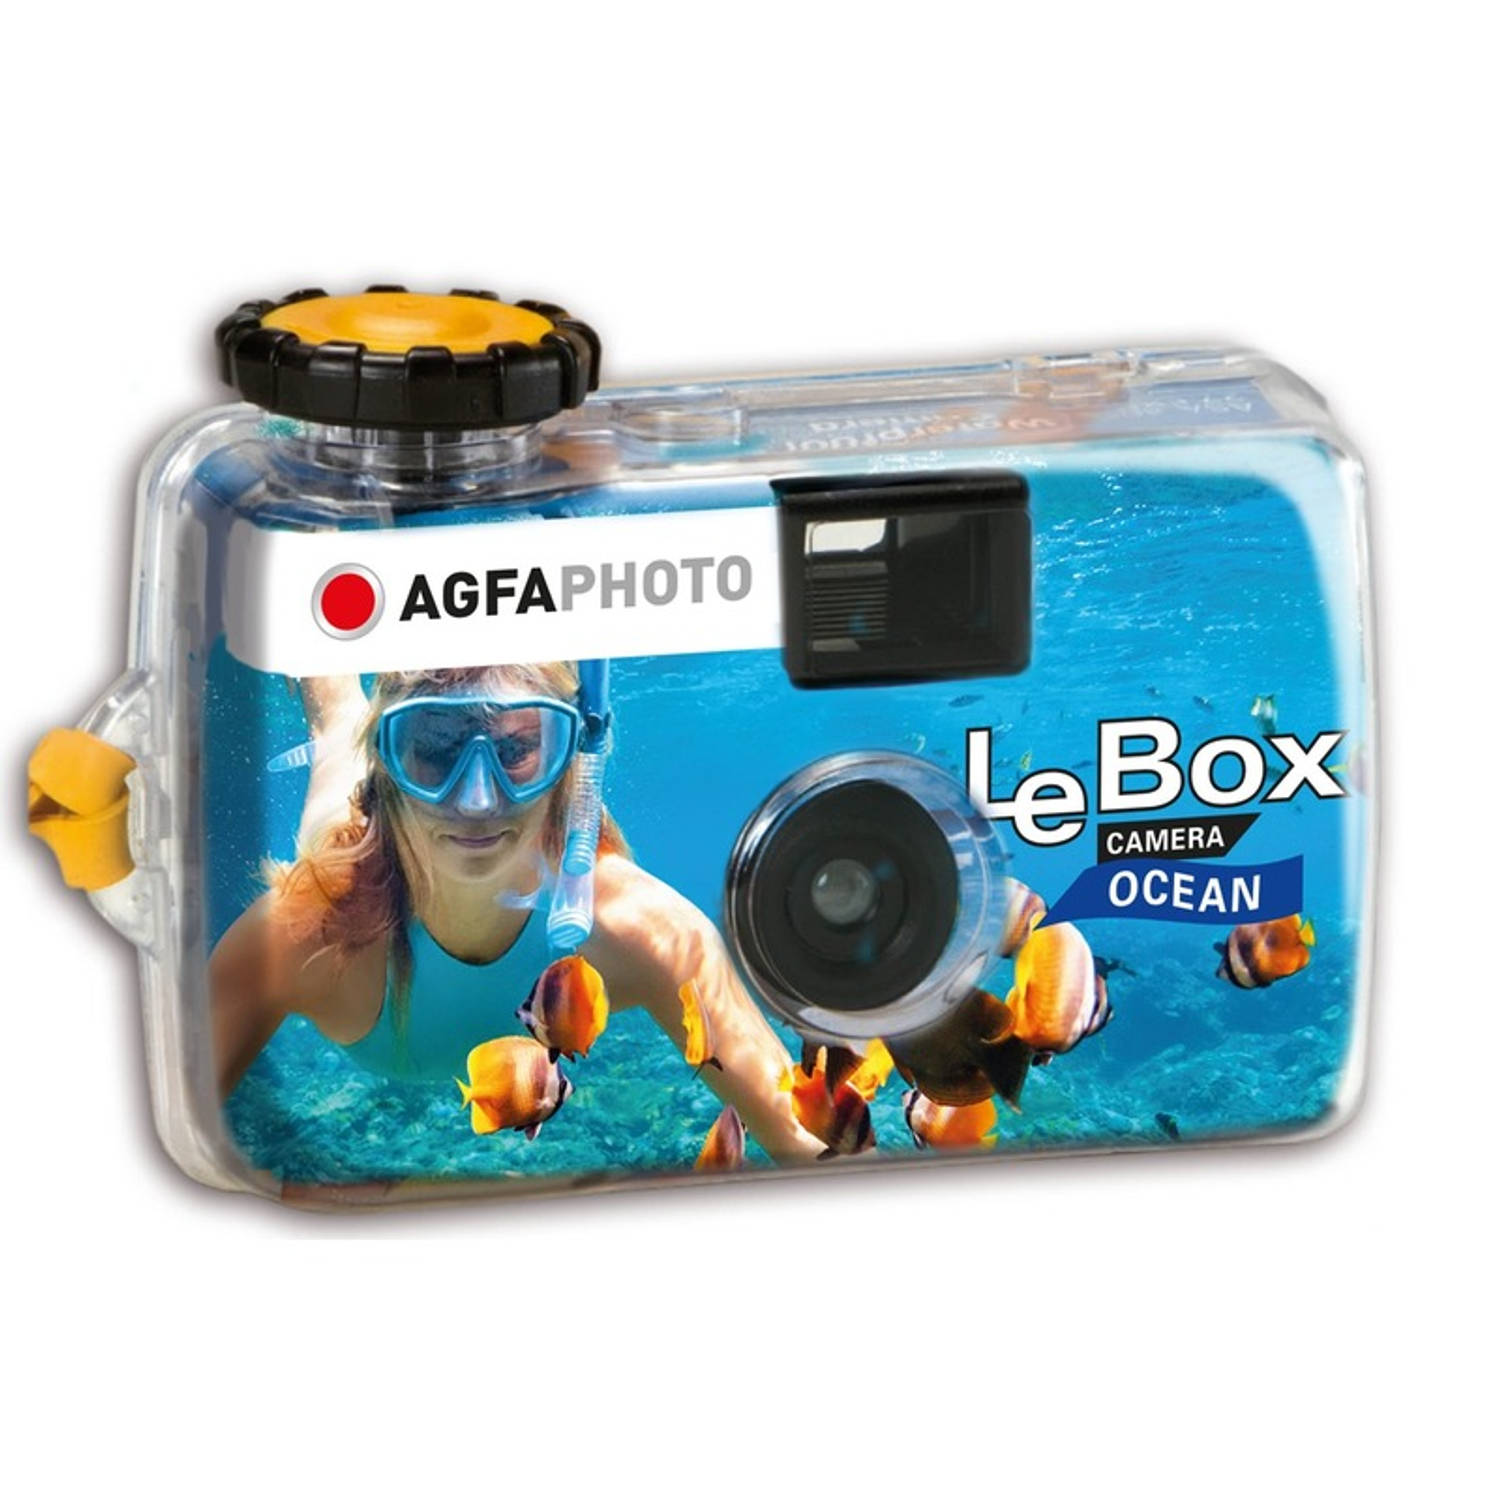 2x Wegwerp onderwater cameras voor 27 kleuren fotos Vakantiefotos weggooi cameras Duiken-zwemmen